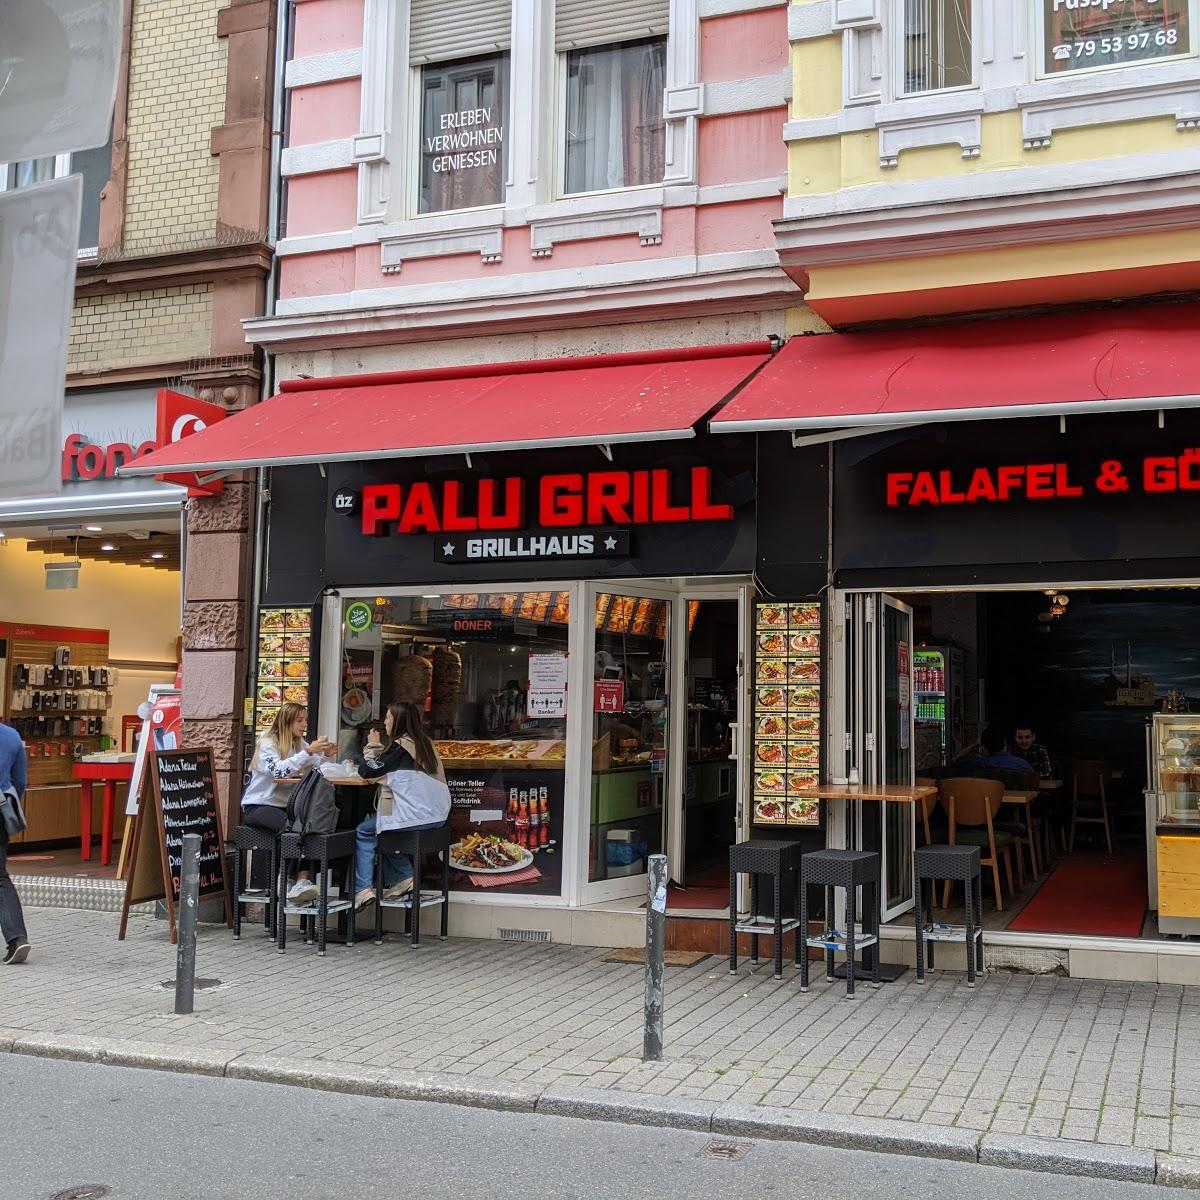 Restaurant "PALU GRILL DÖNER" in Frankfurt am Main